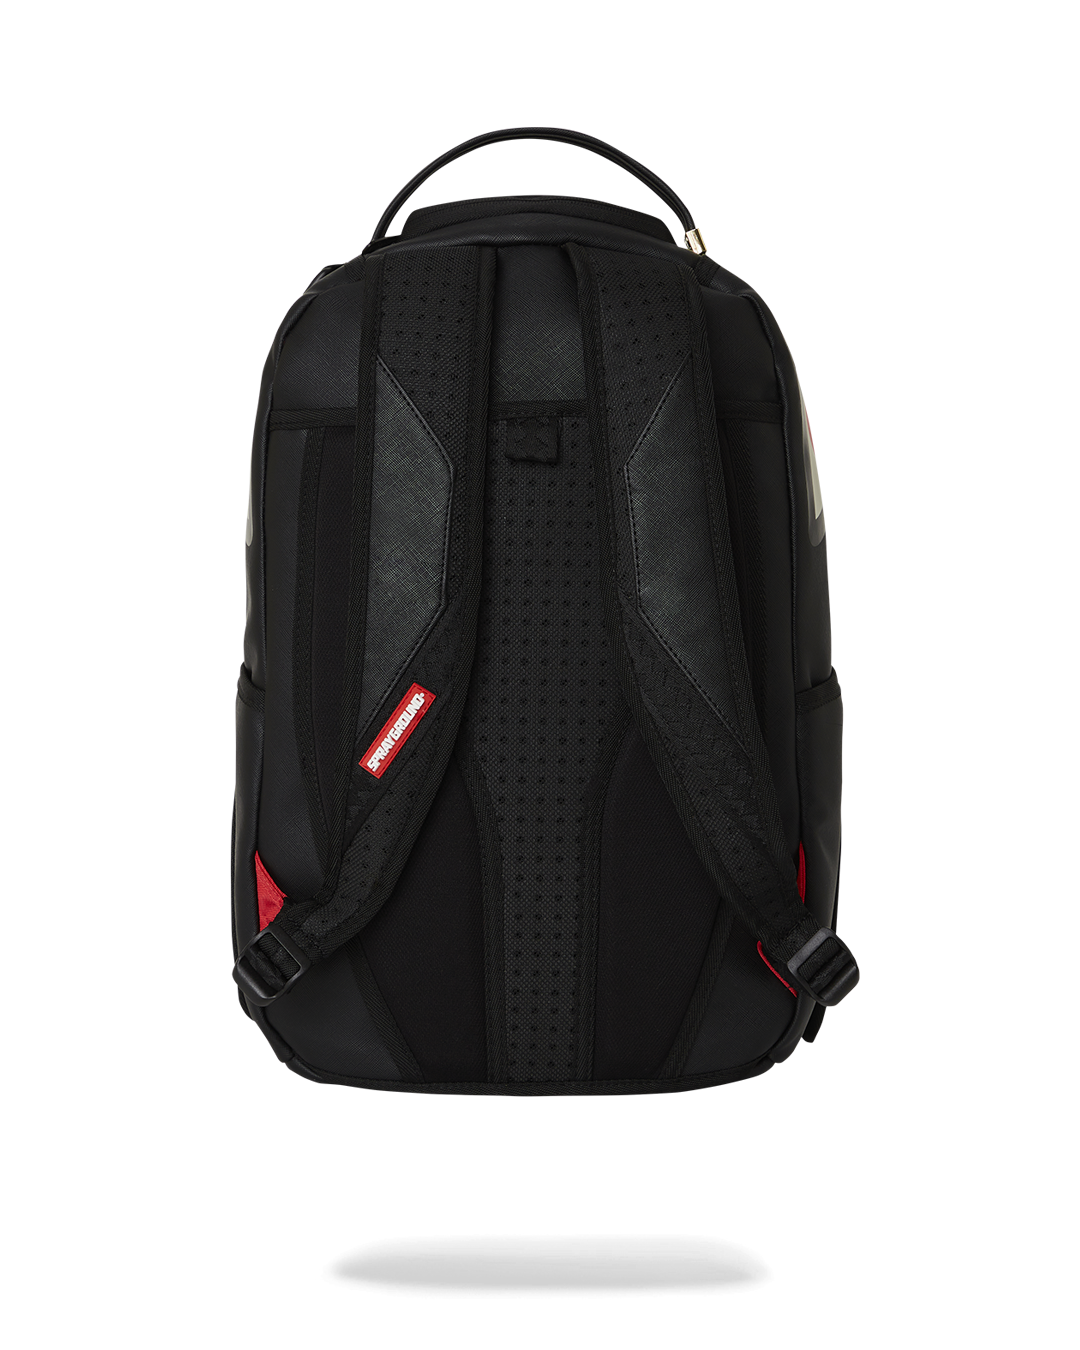 Velcro Shark - 3 Interchangeable Sharks Backpack (DLXV)